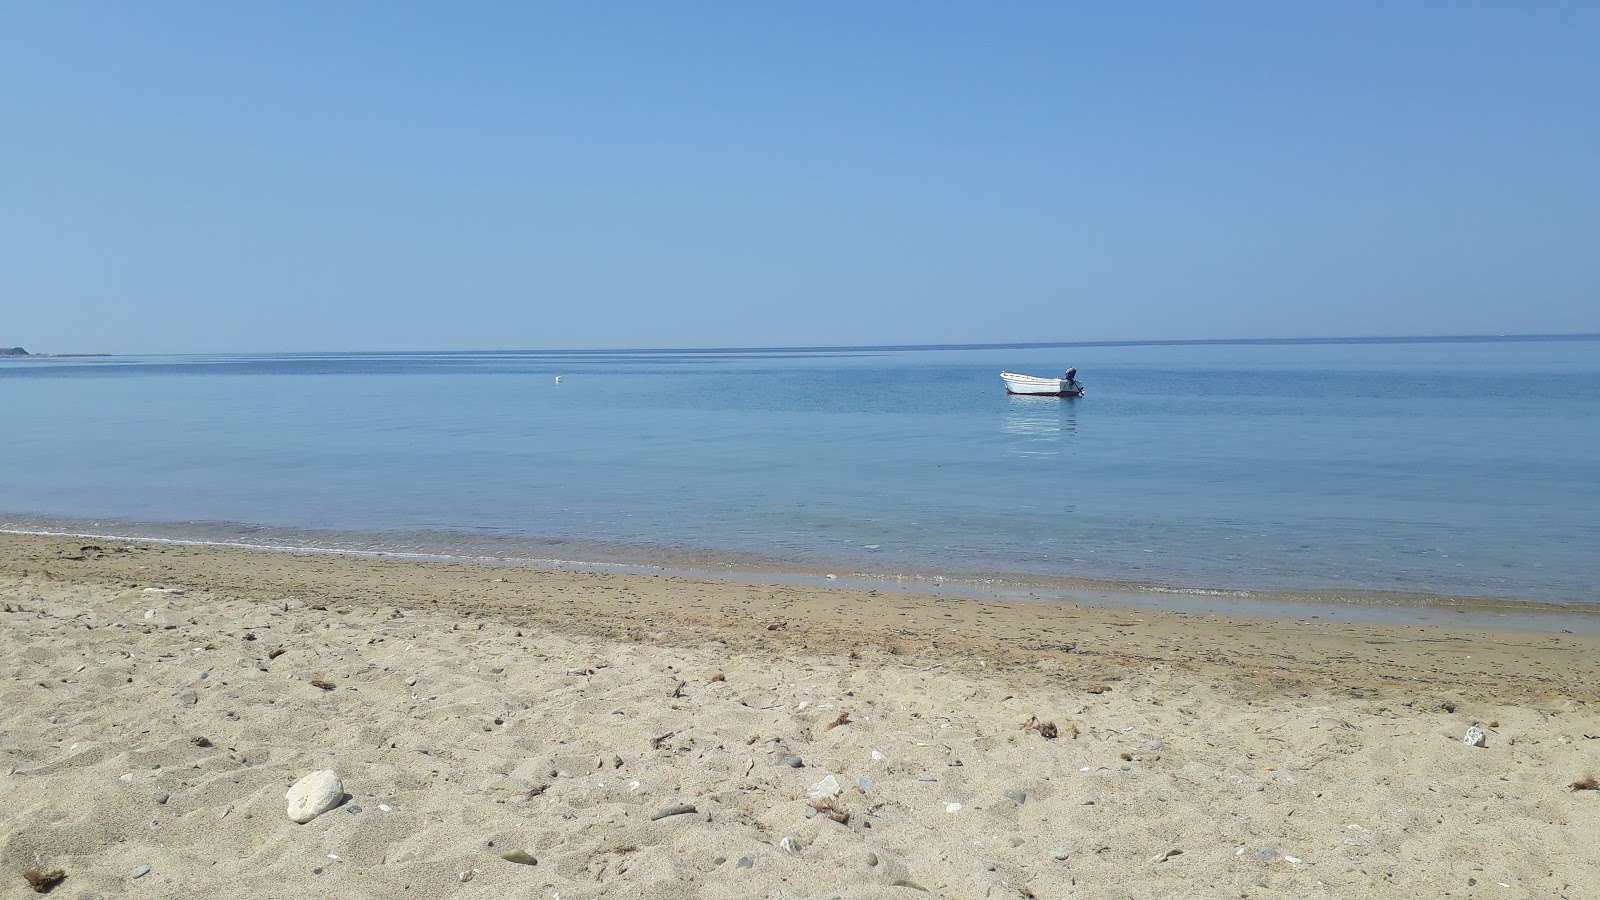 Zdjęcie Geyikli beach z przestronna plaża